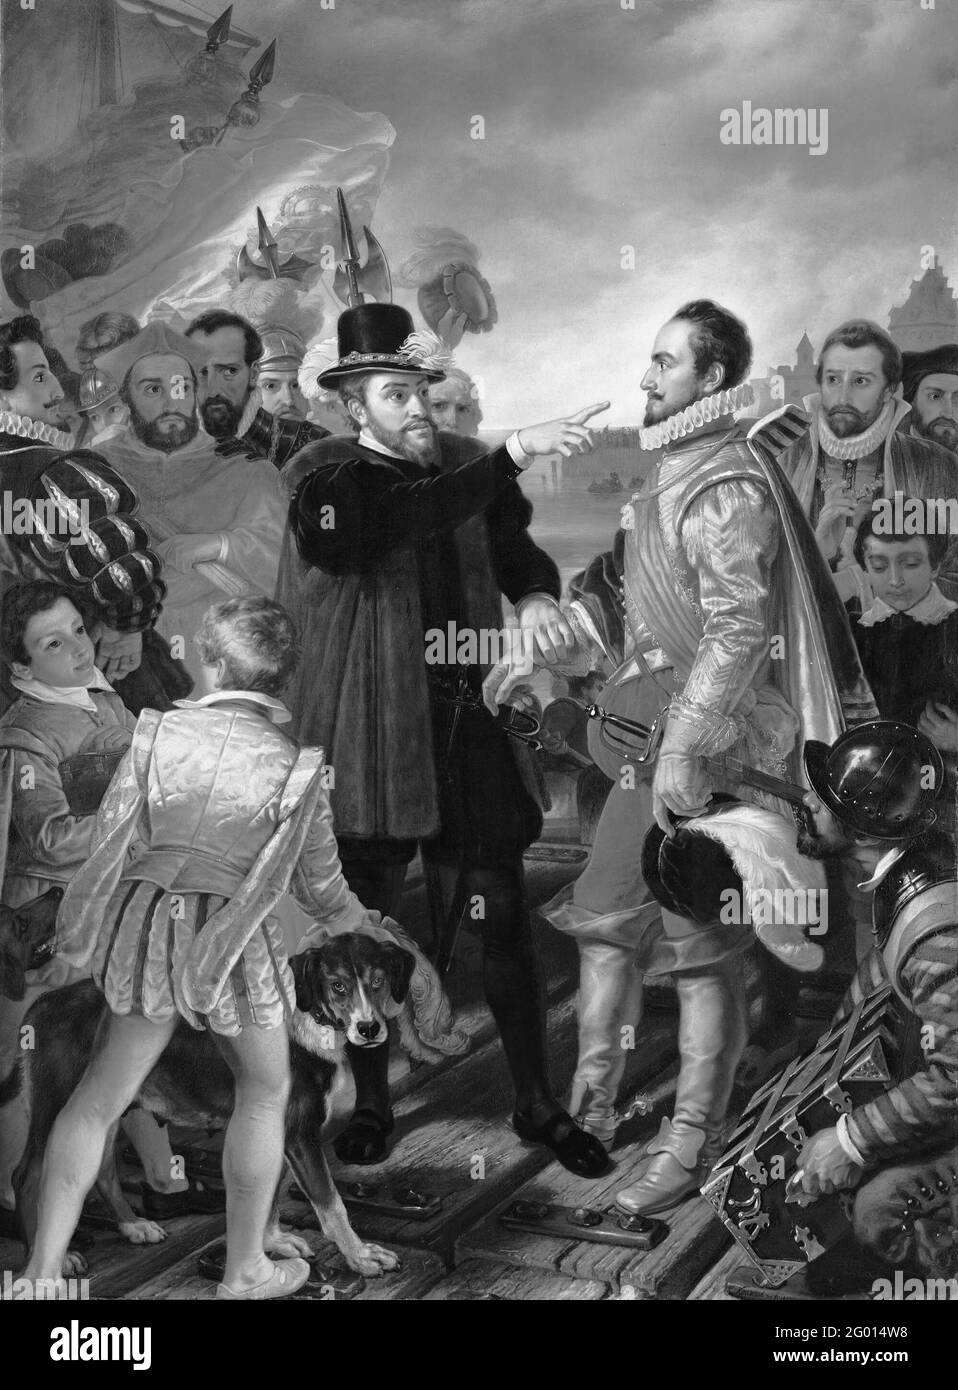 Felipe II, rey de España, reprocha a Guillermo I, príncipe de Orange, en Vlissingen a su salida de los Países Bajos en 1559. Philips II, Rey de España, acusa al Príncipe Willem van Oranje en Vlissingen a su salida de los Países Bajos en 1559, personal para dirigir la objeción de la nobleza. El acto tiene lugar en un embarcadero, dejó al rey español con su efecto con las velas del barco en el fondo. El rey agarra la mano del príncipe y le señala con su dedo. A la derecha el príncipe con sombrero en mano y algunos miembros de su consecuencia. En primer plano un soldado español Foto de stock